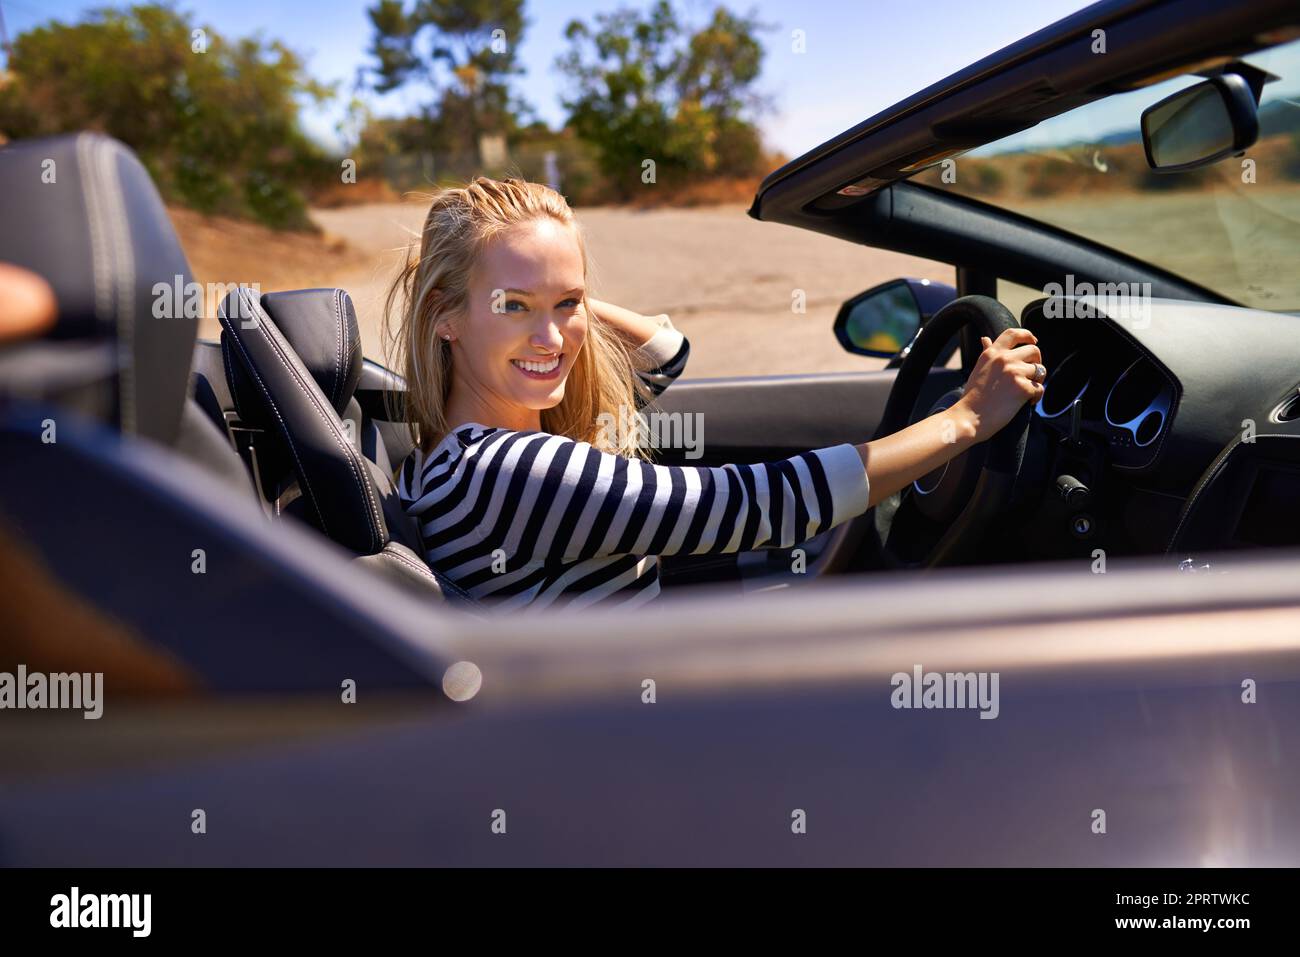 Liebe die offene Straße. Eine junge Frau, die in einem Sportwagen fährt. Stockfoto